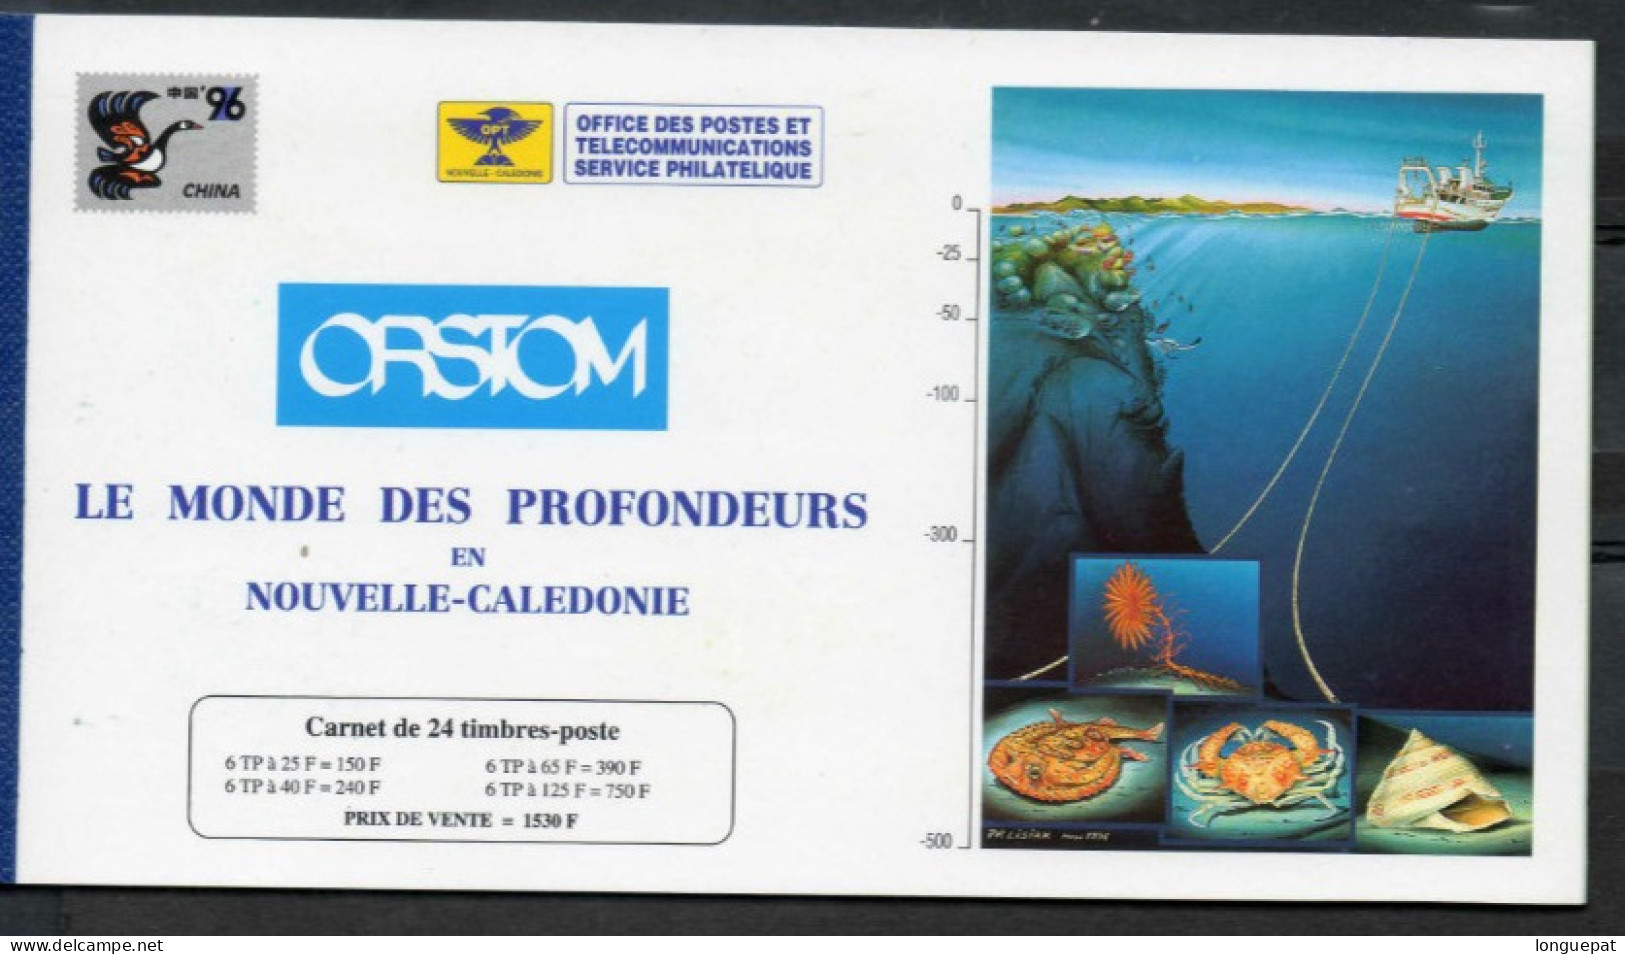 Nelle CALEDONIE : Faune Marine : Poisson, Coquillage, Crabe, Etc - "China 96" Exposition Philatélique - - Libretti